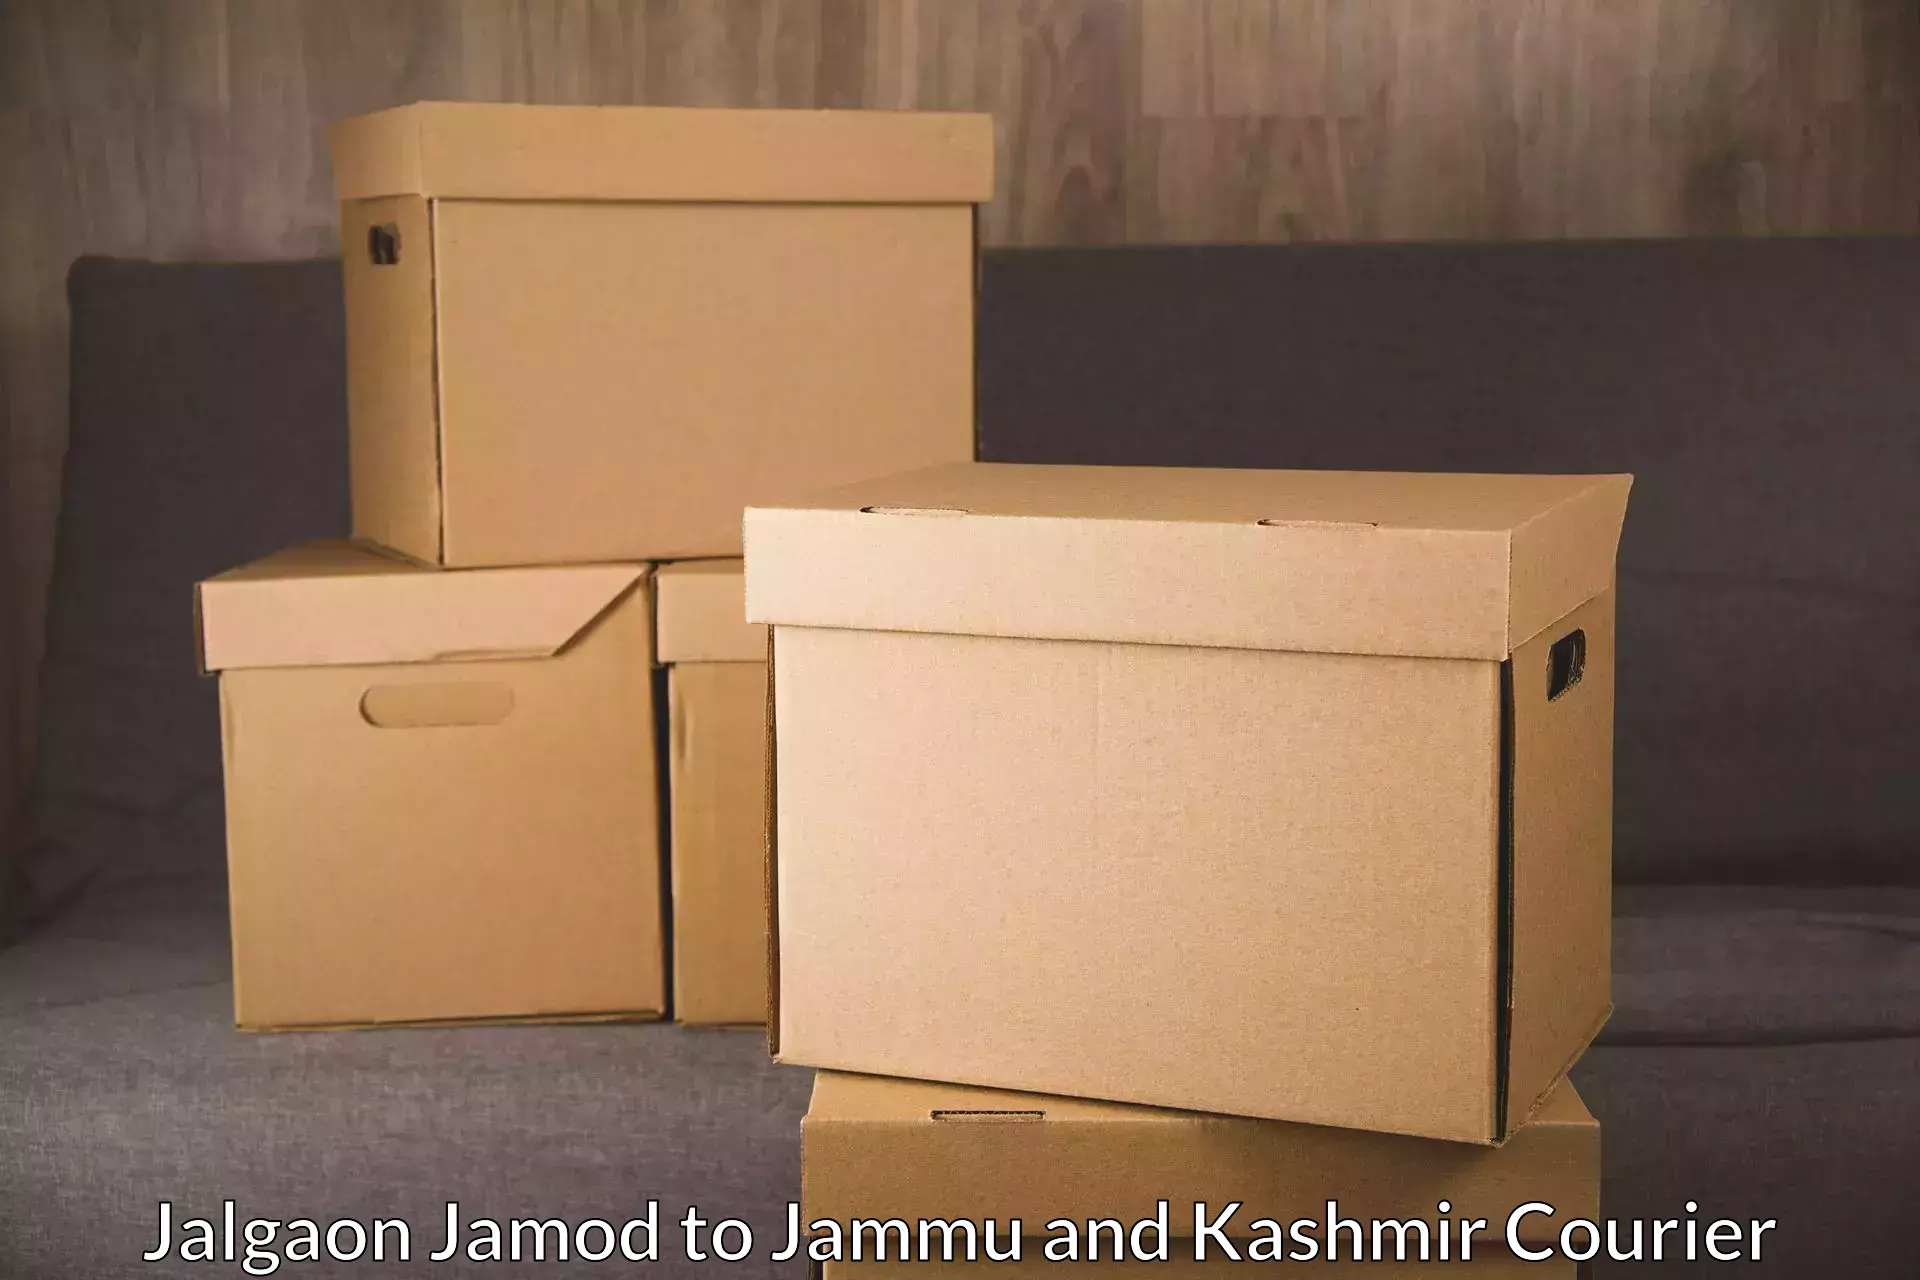 Trackable shipping service Jalgaon Jamod to Budgam